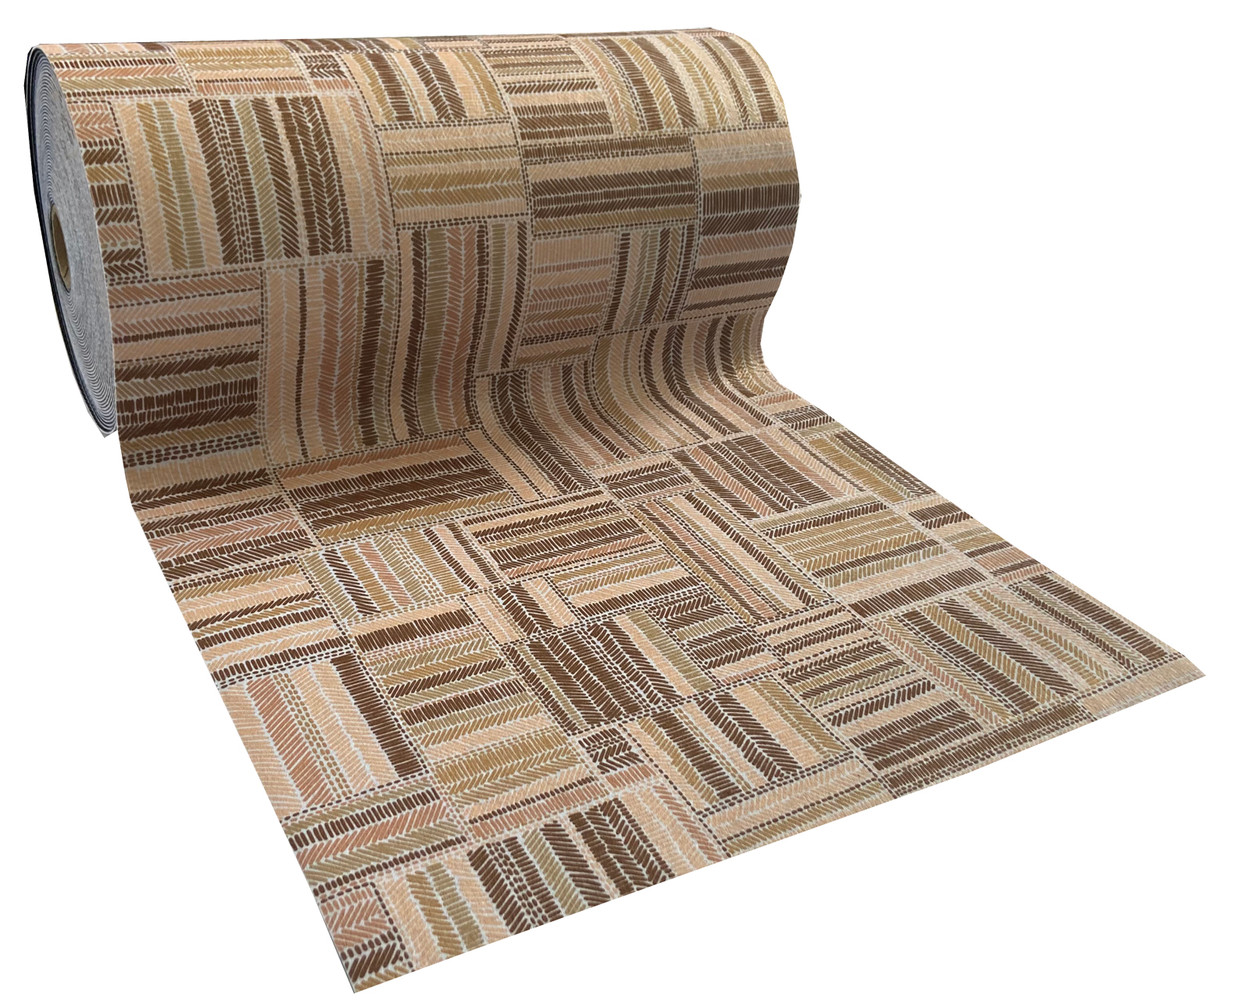 https://images.ssstatic.com/alfombra-moqueta-antideslizante-por-metros-para-cocina-y-pasillo-losas-terrazo-67-856025675.jpg